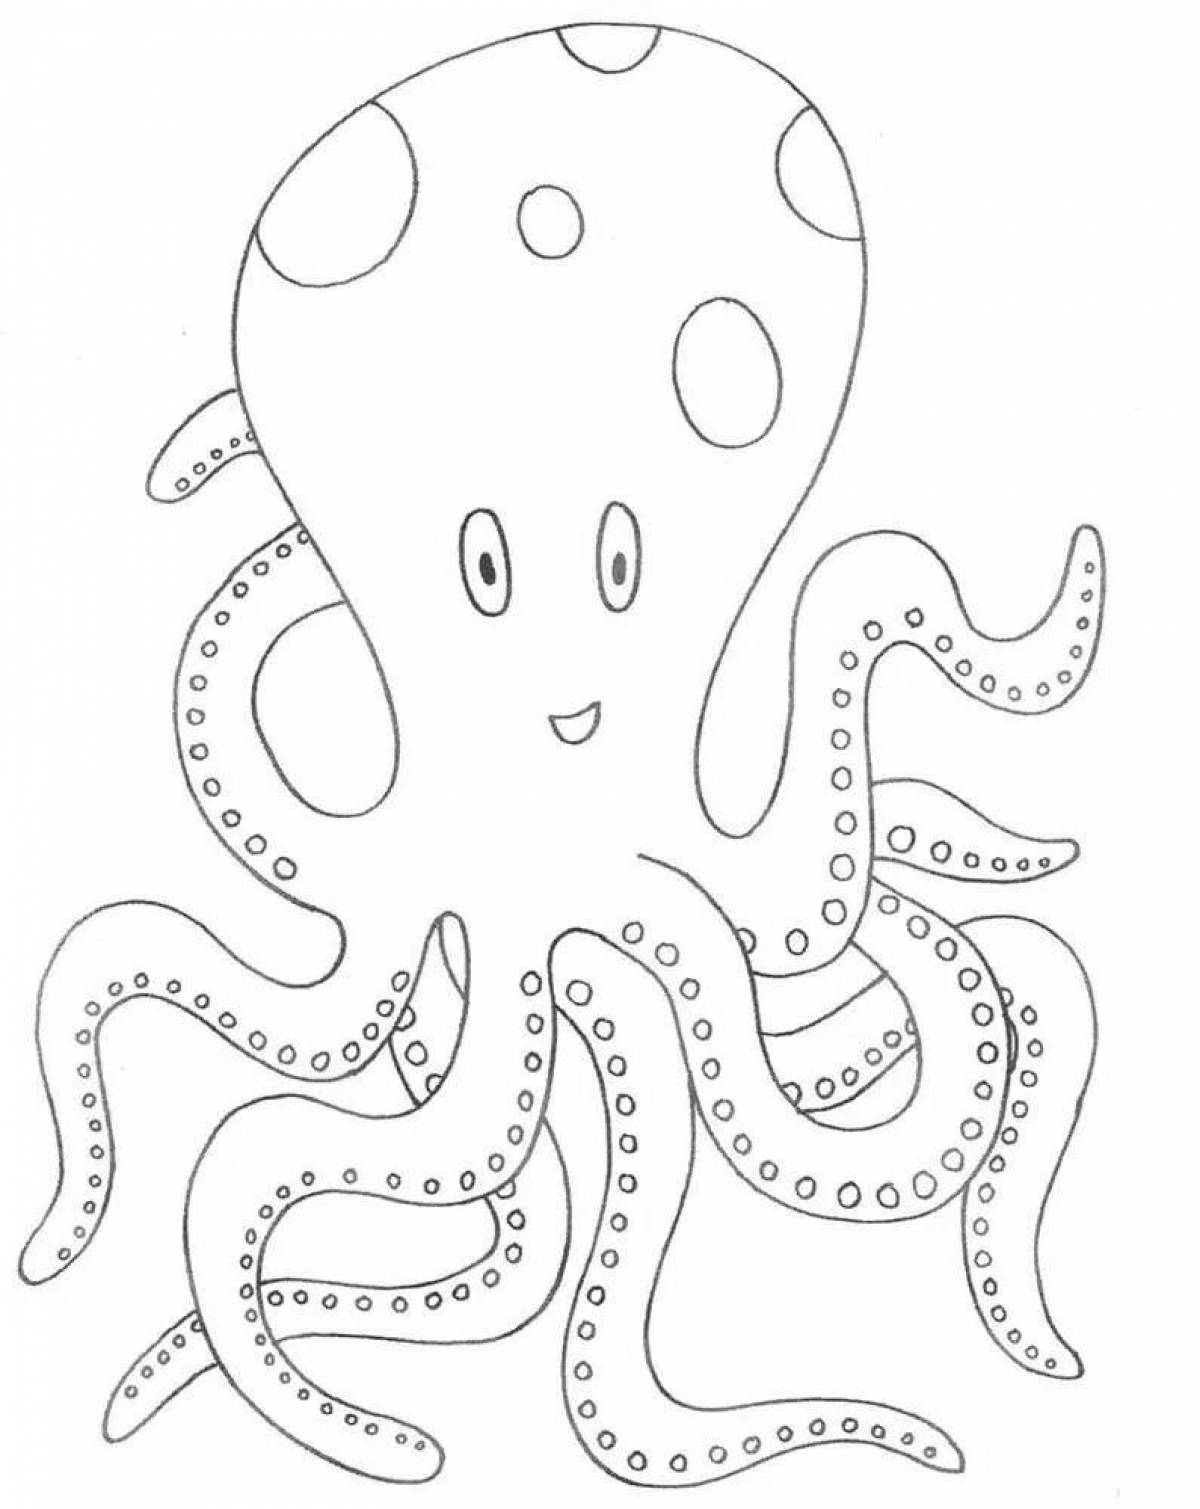 Fun sea animal coloring book for kids